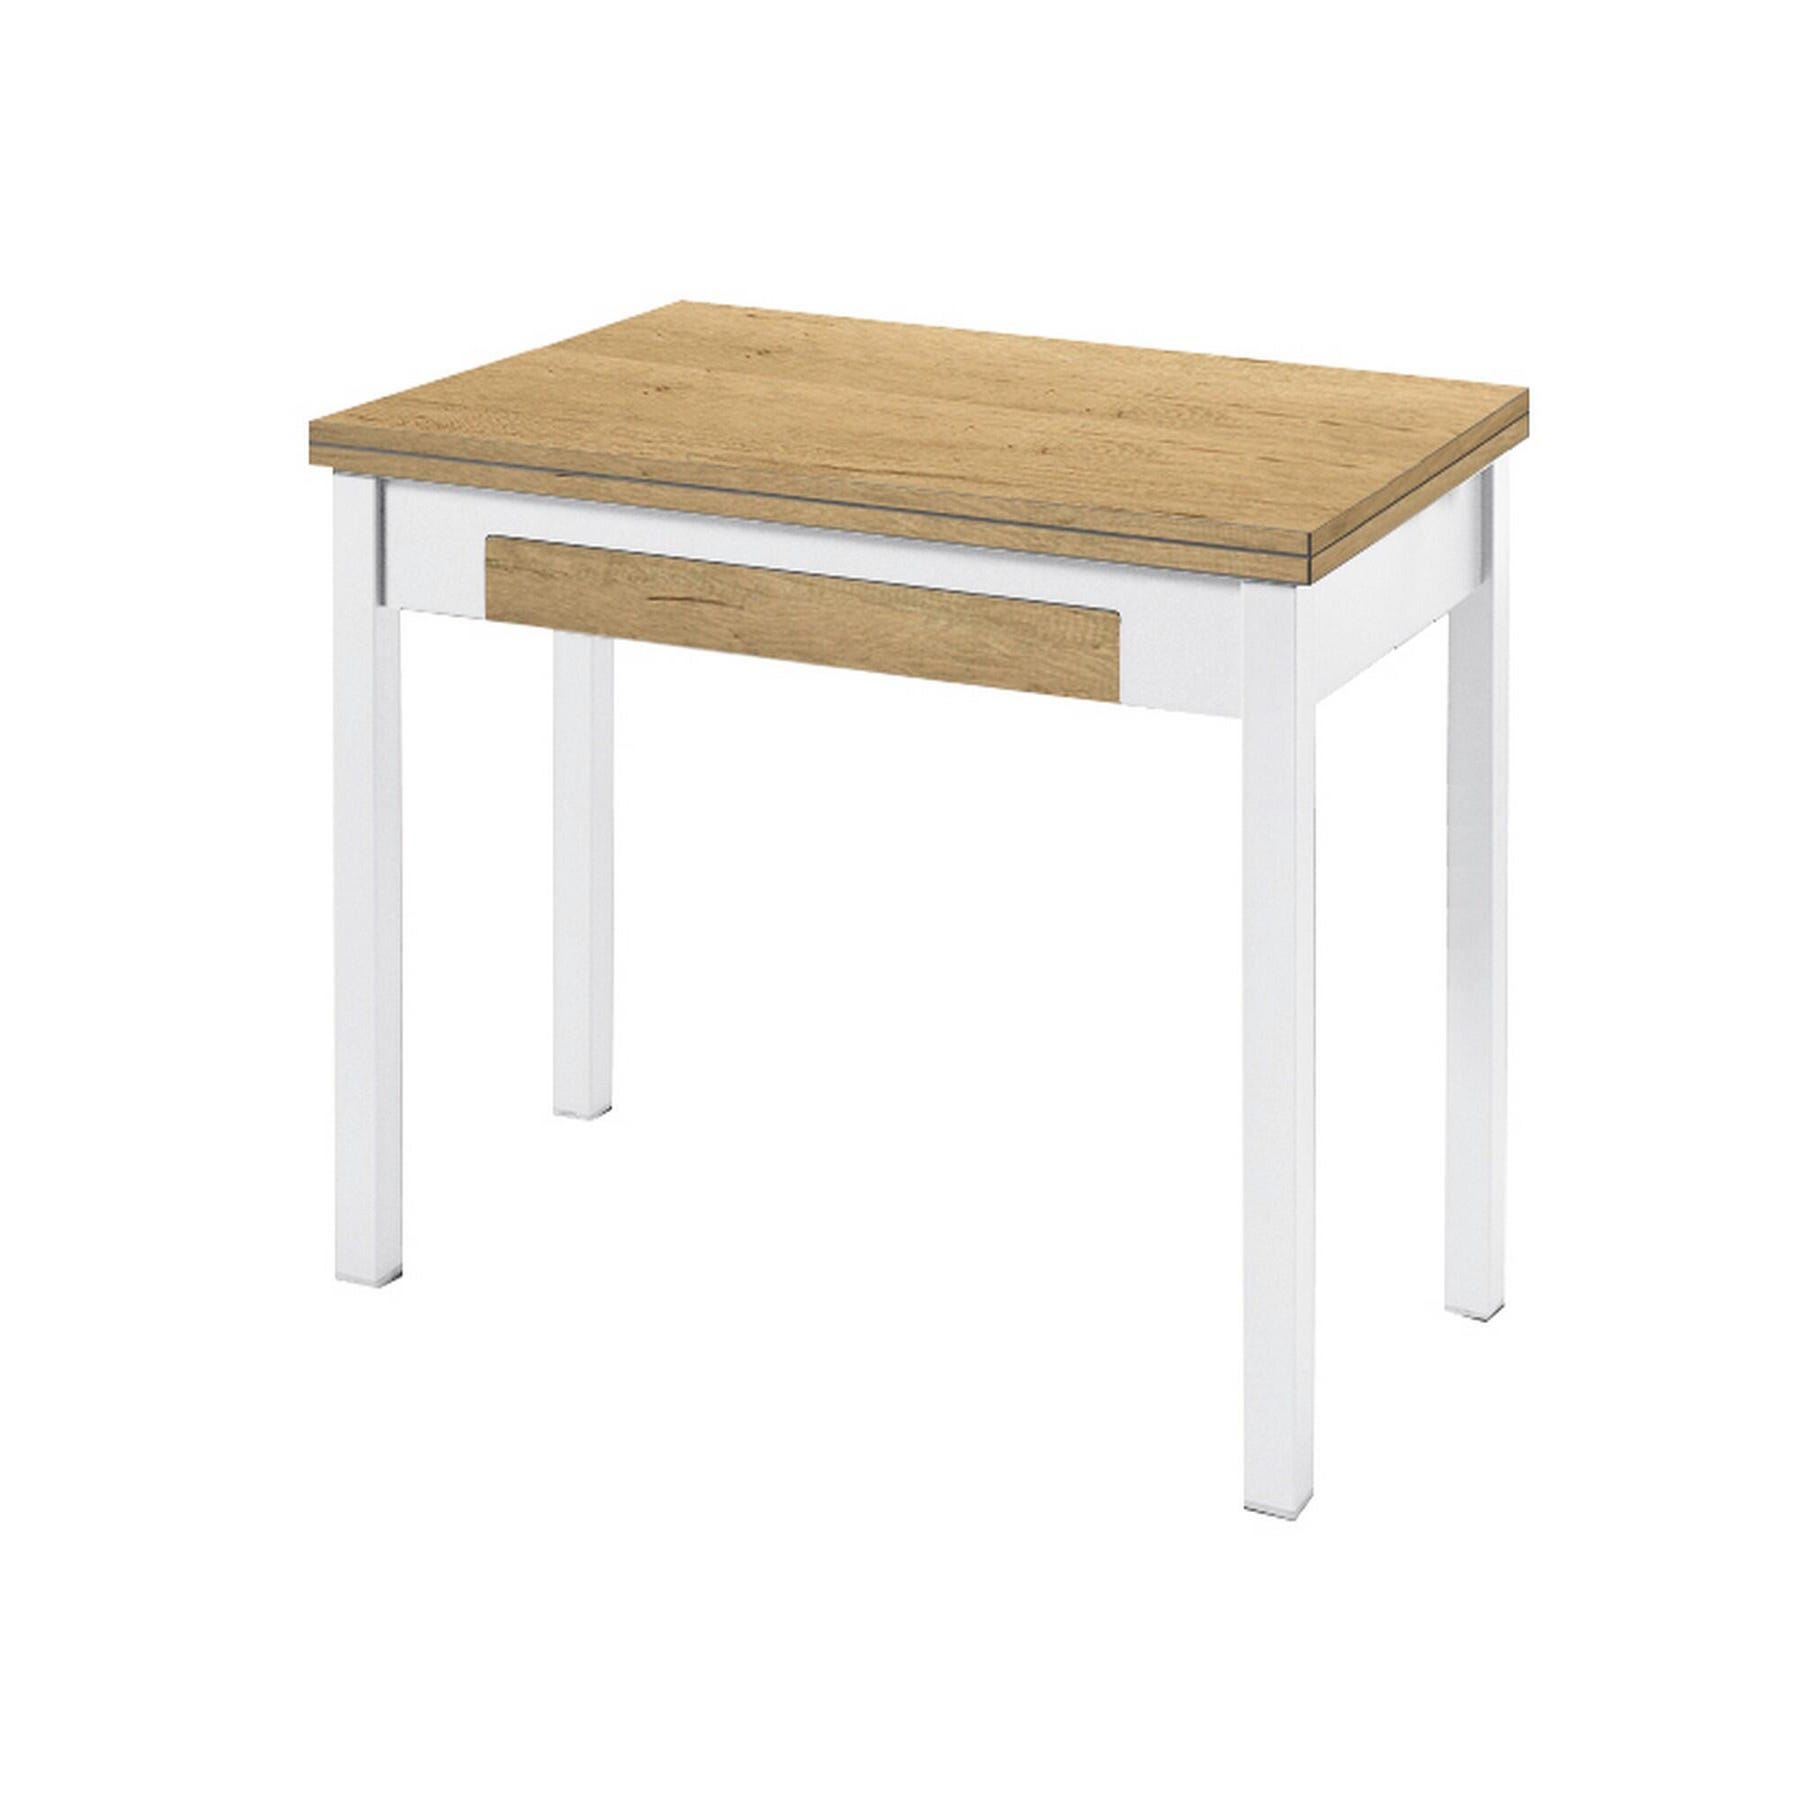 Mesa de cocina extensible blanca | fanmuebles